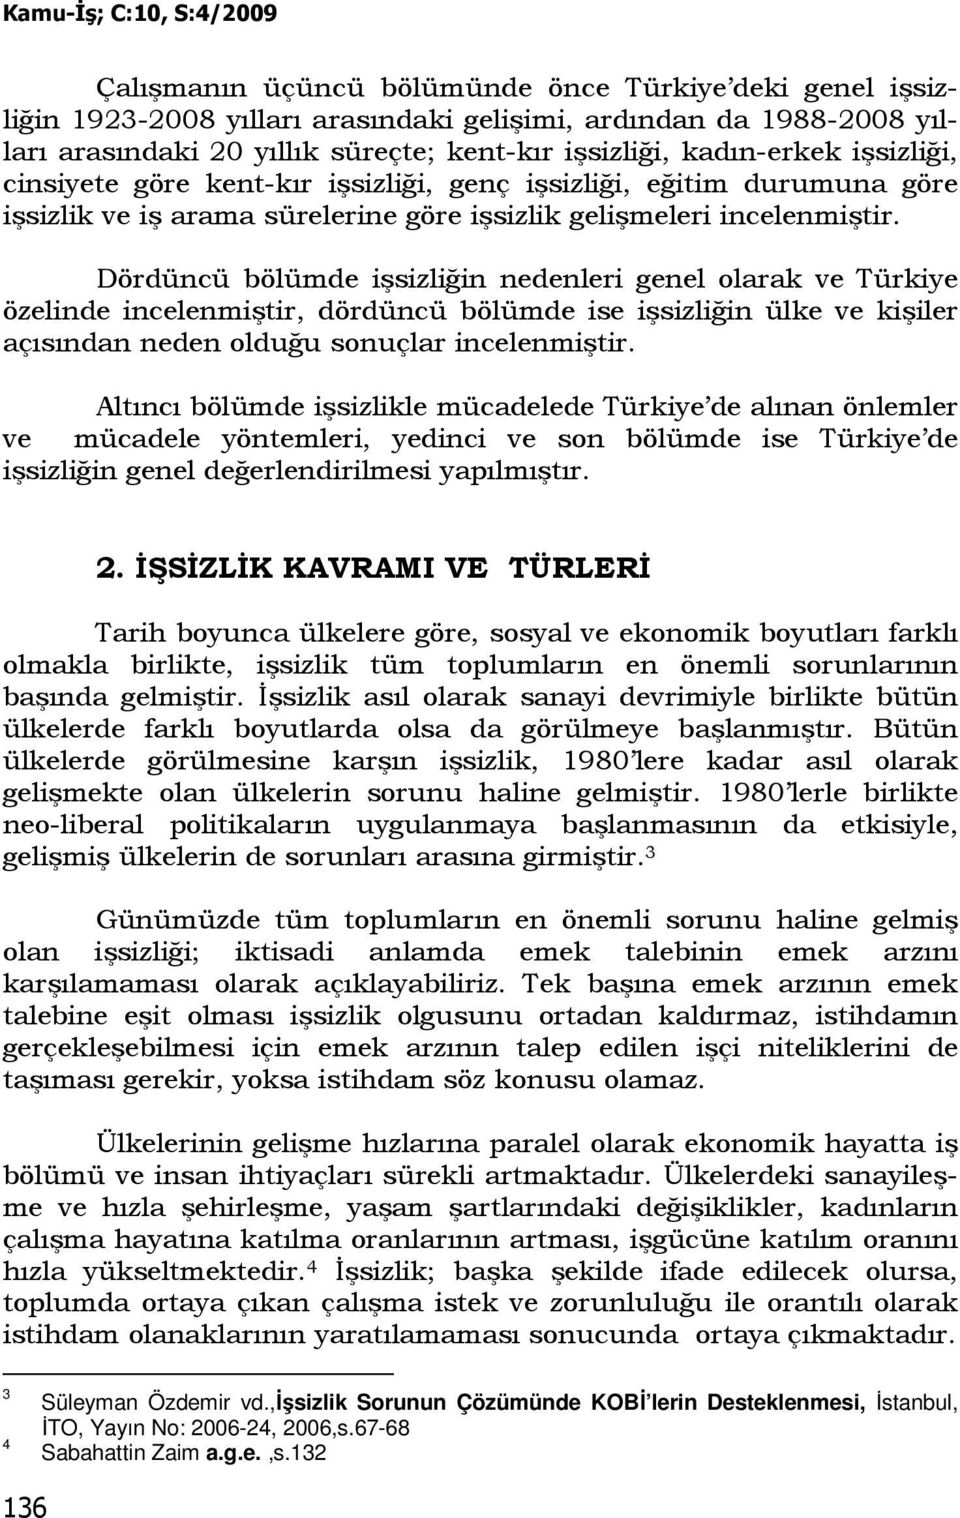 Dördüncü bölümde işsizliğin nedenleri genel olarak ve Türkiye özelinde incelenmiştir, dördüncü bölümde ise işsizliğin ülke ve kişiler açısından neden olduğu sonuçlar incelenmiştir.